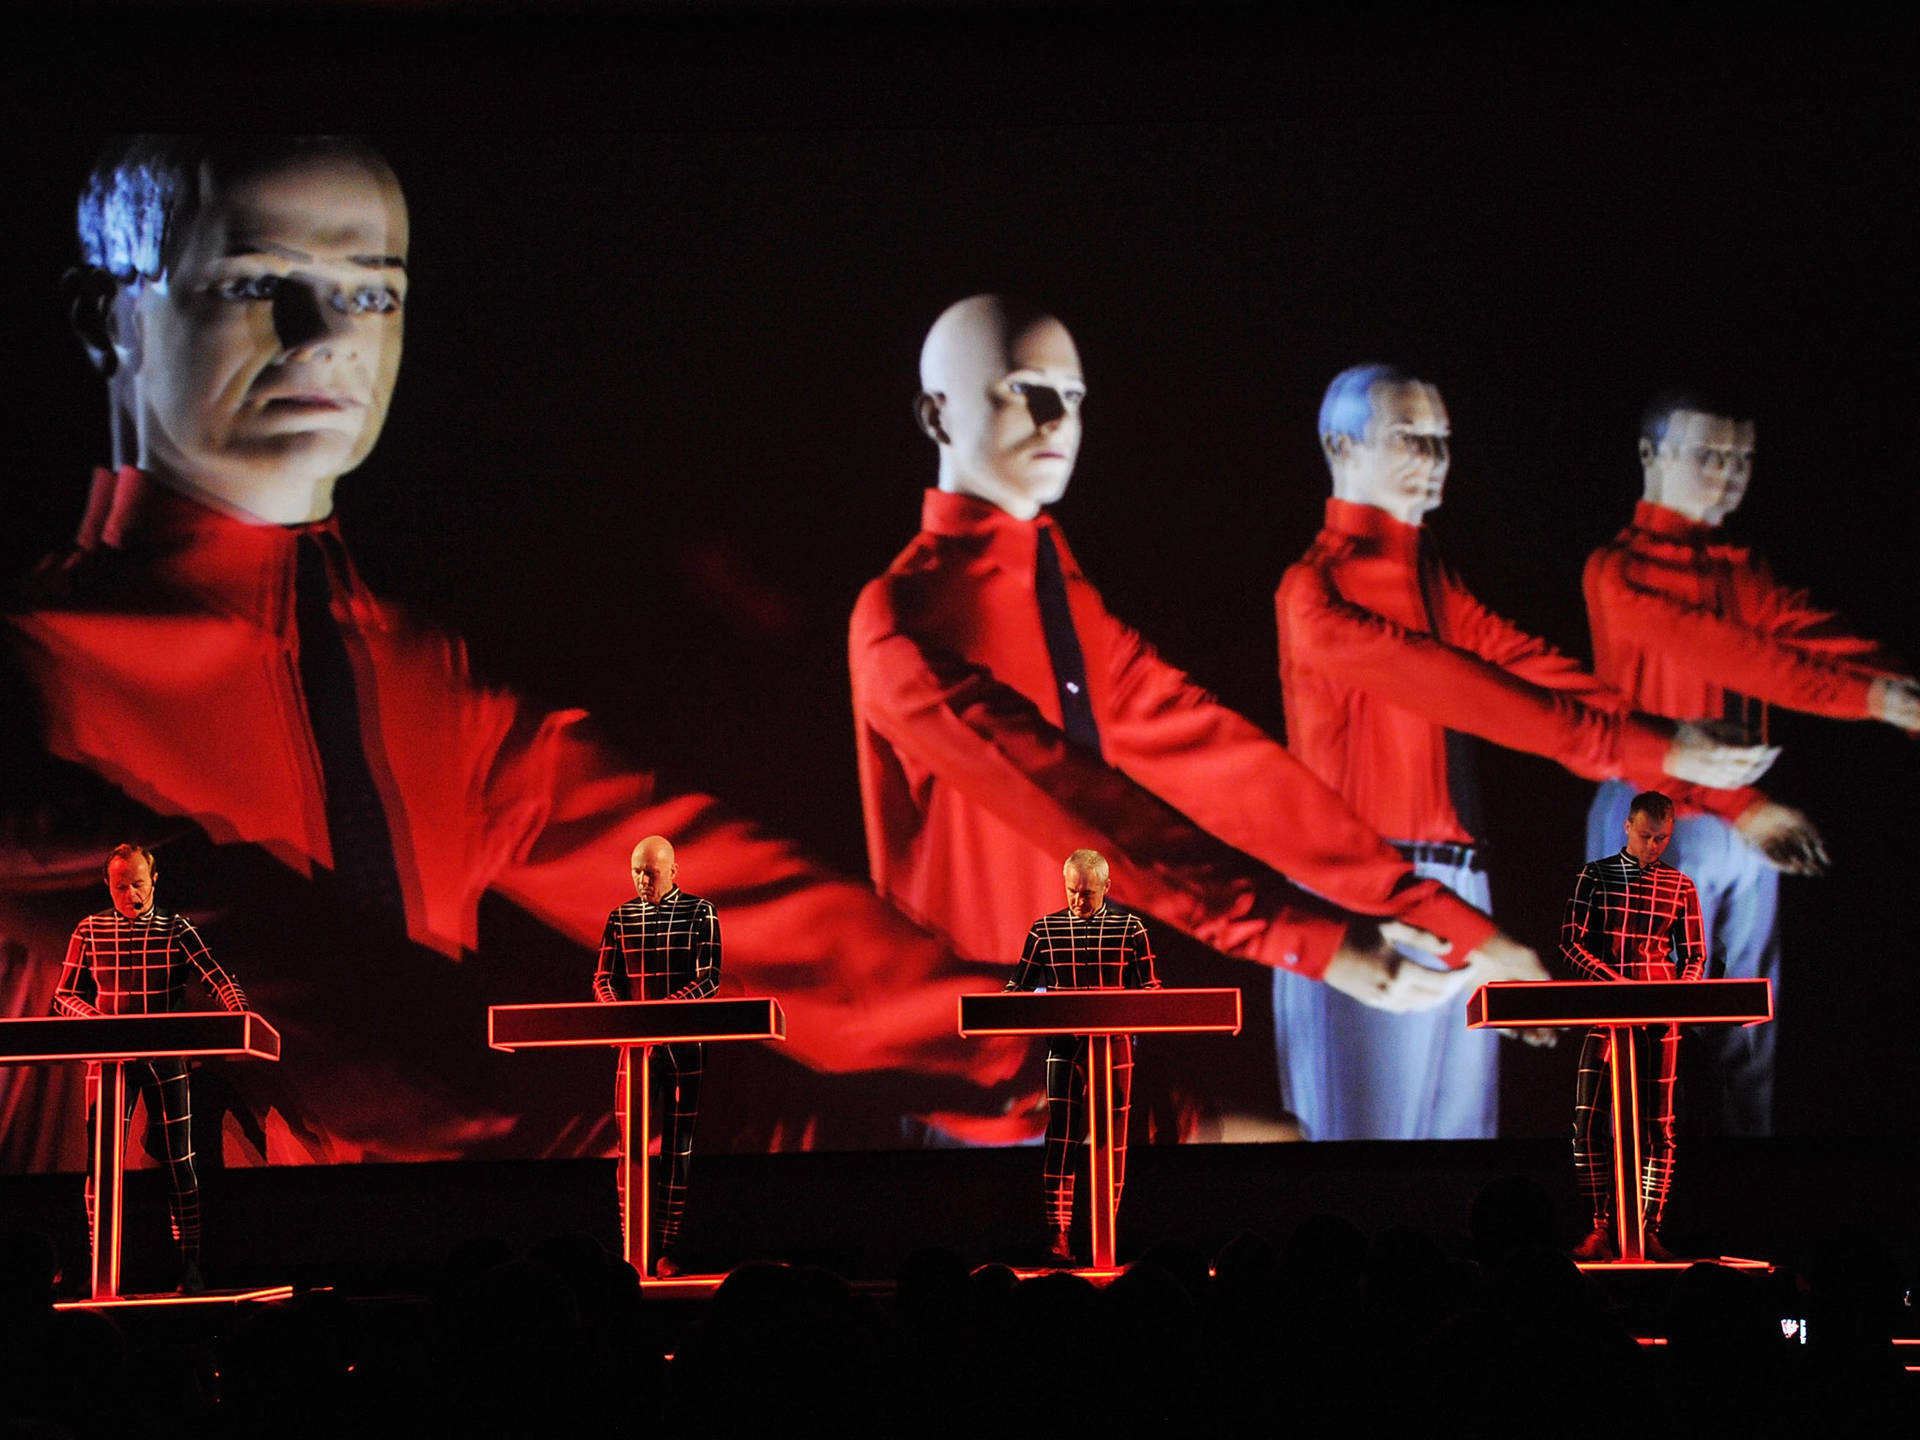 Presentaciónen Vivo De Kraftwerk Con Clones De Maniquíes. Fondo de pantalla